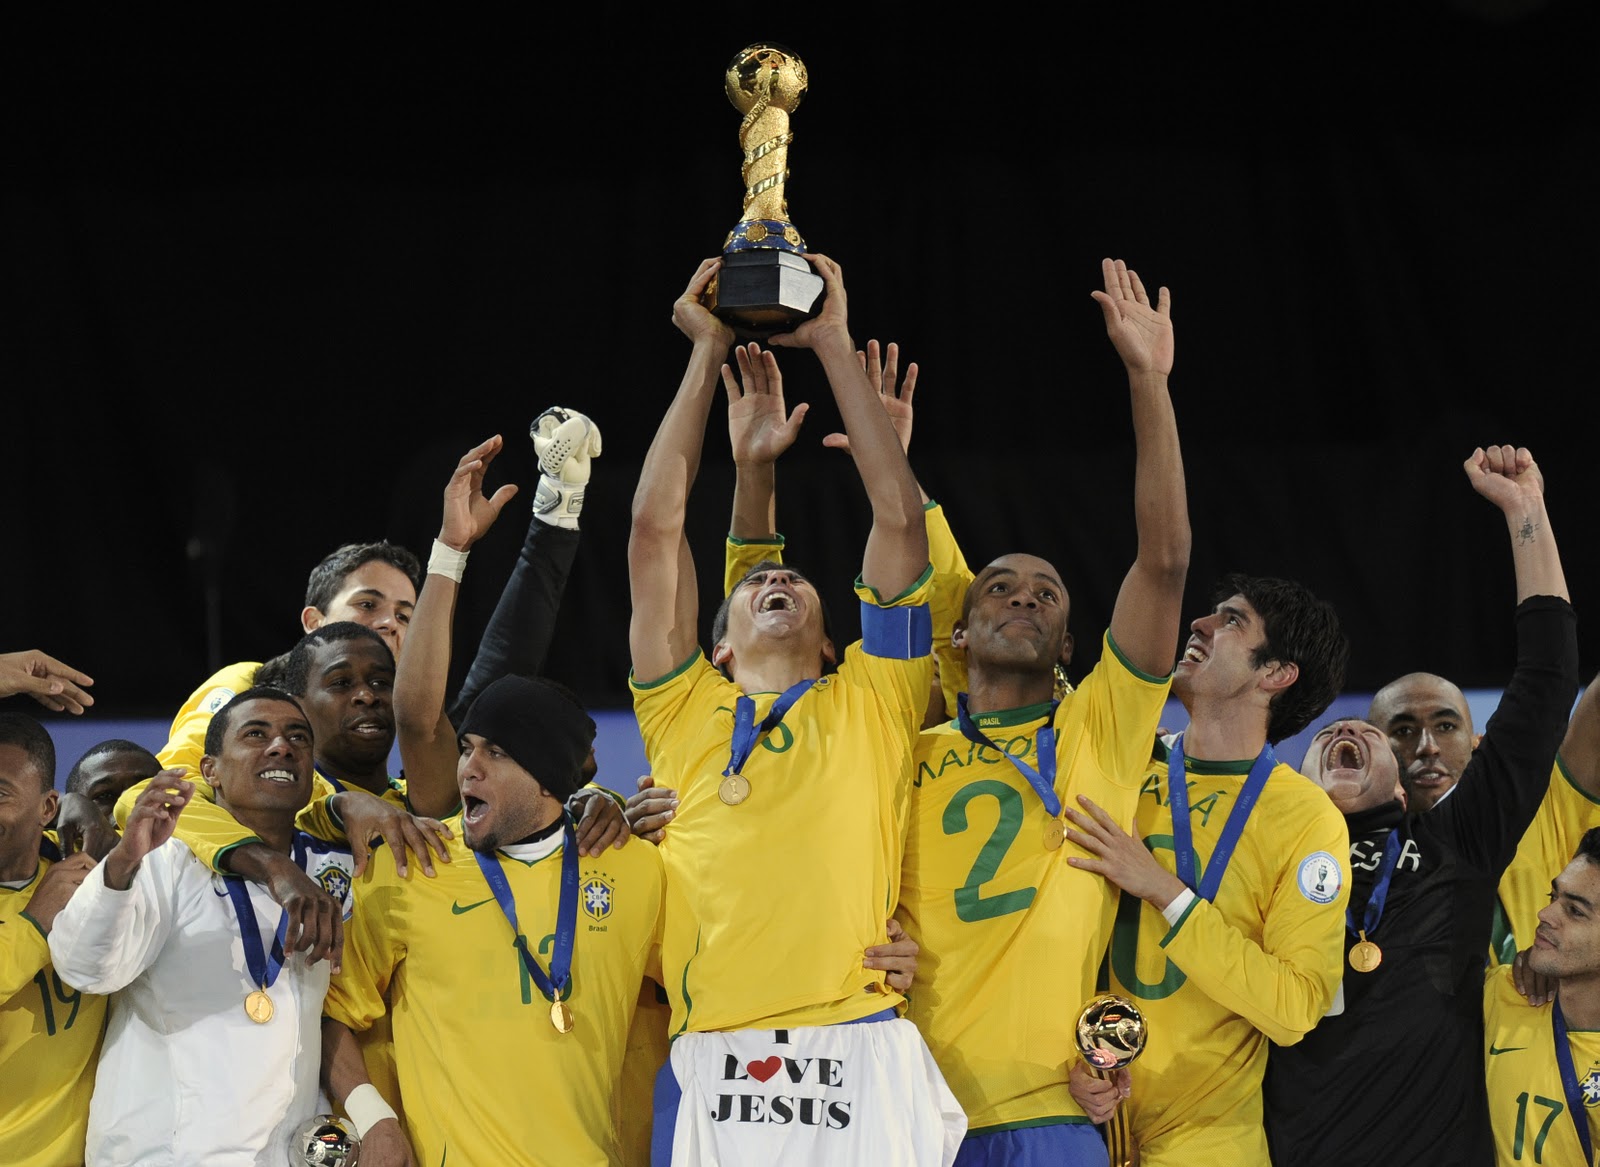 24 года назад Бразилия выиграла первый Кубок конфедераций. Вспоминаем всех победителей турнира